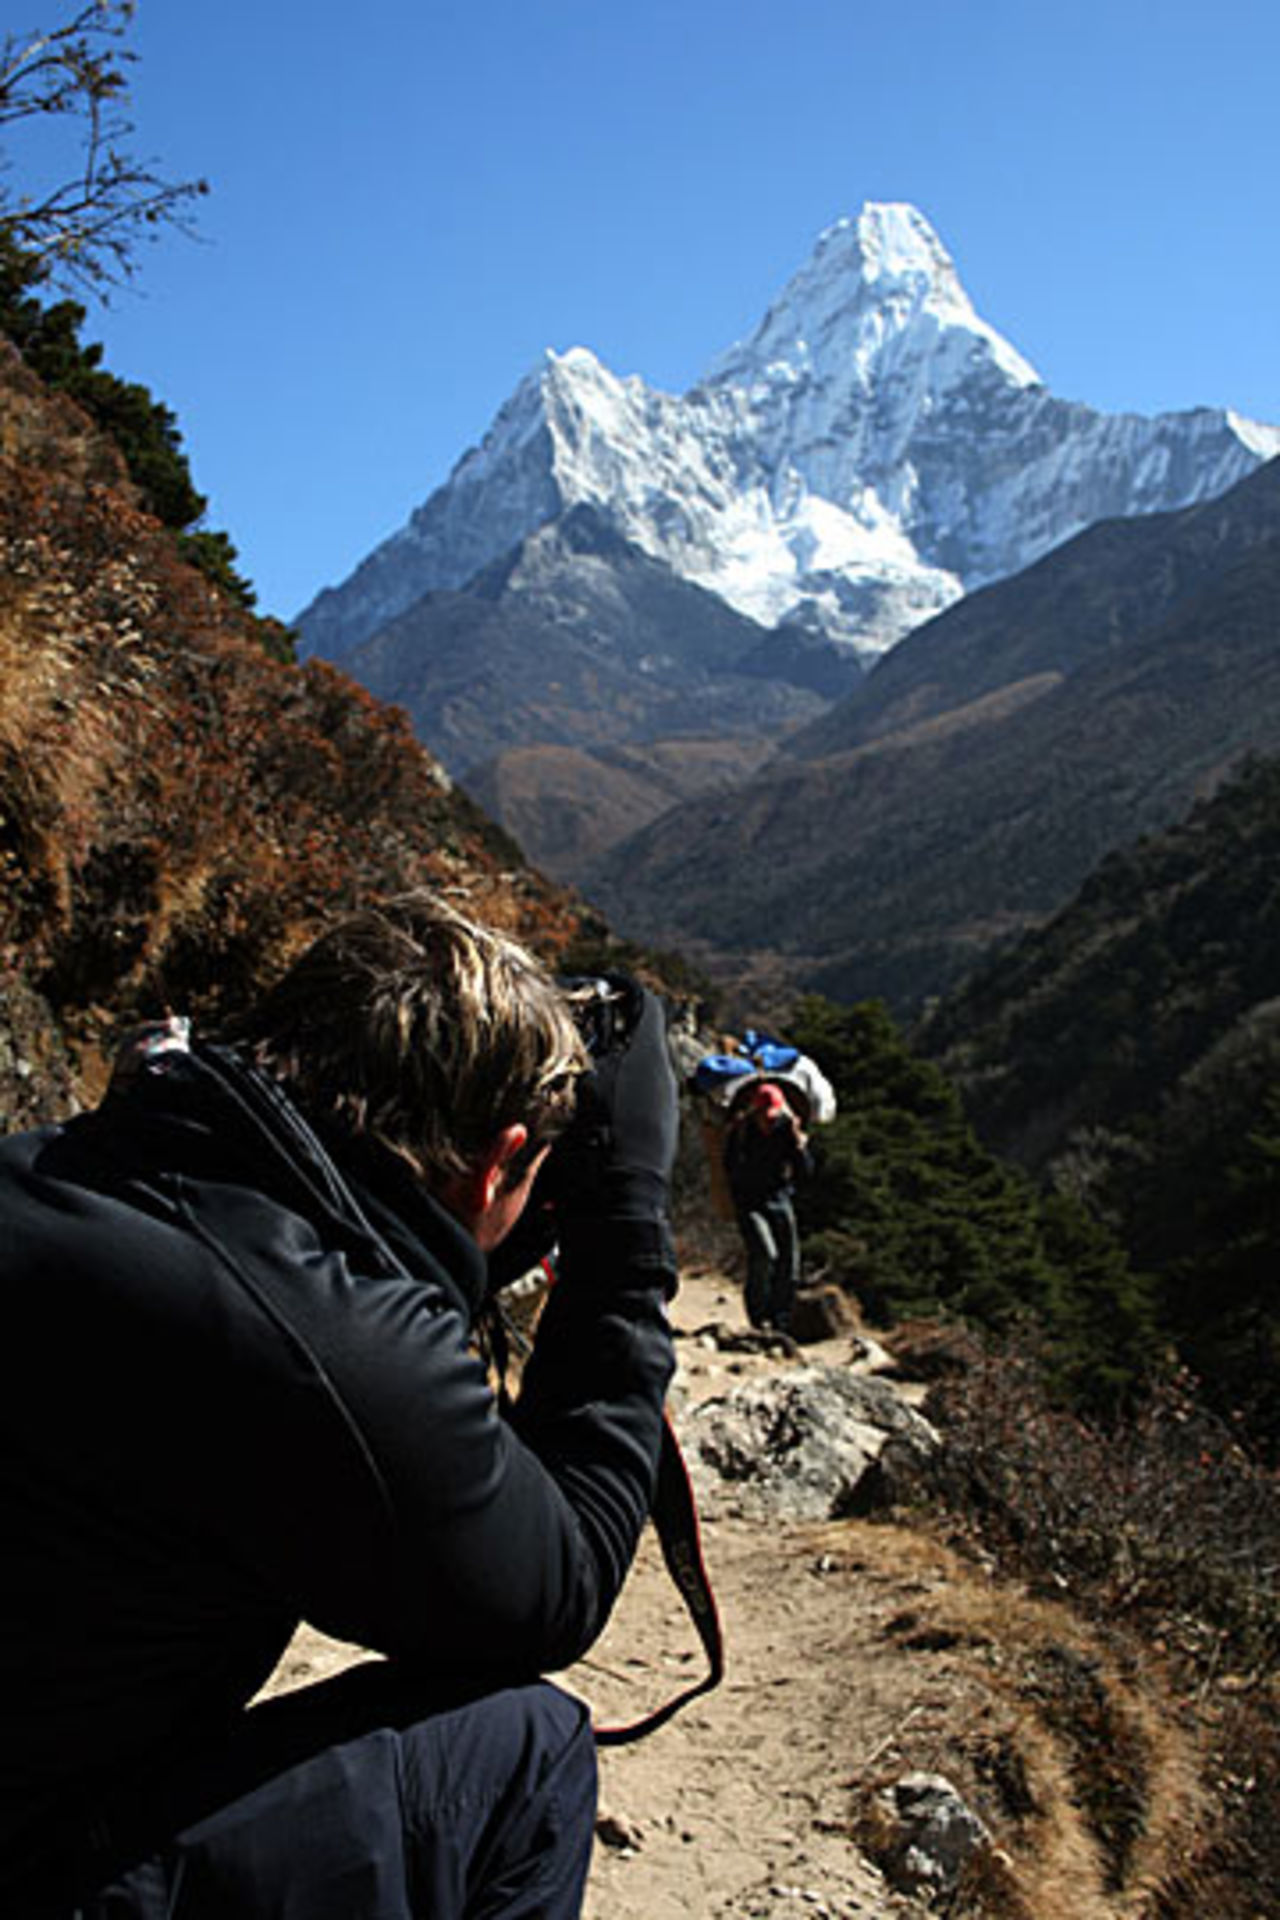 Graham Napier takes photos of Mount Everest, November, 2007